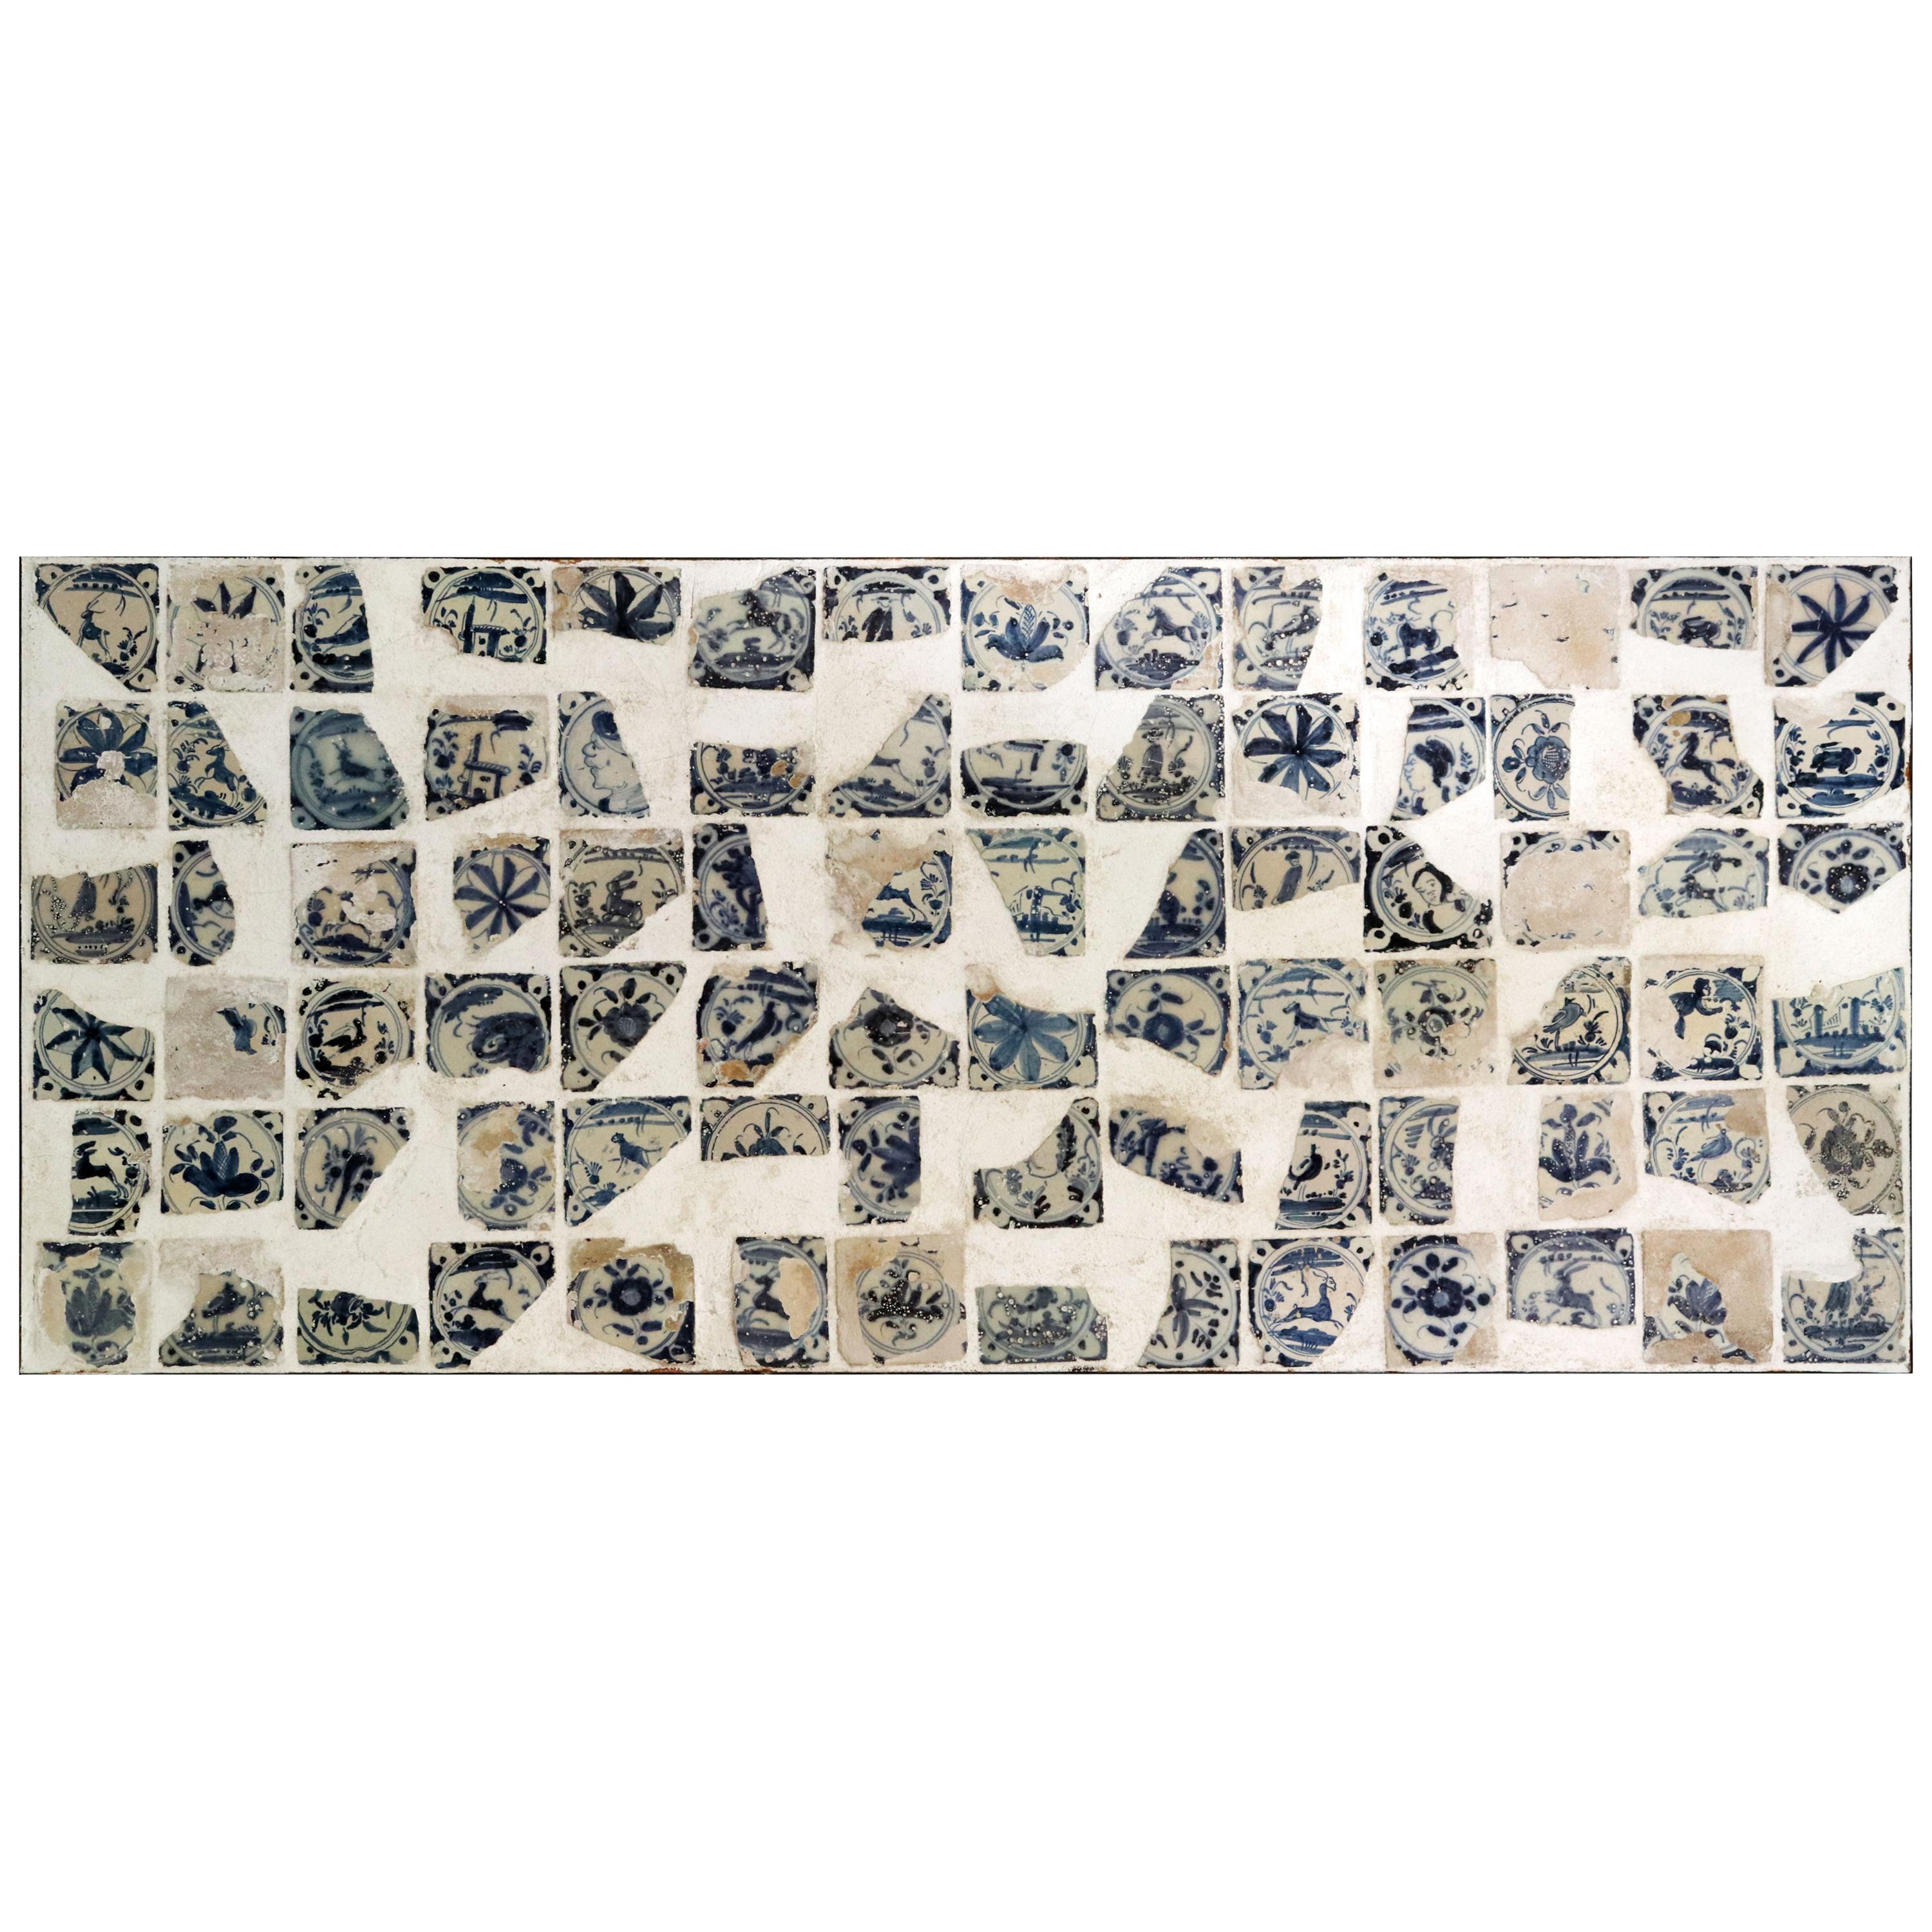 Fragments de céramique émaillée du XVIIIe siècle disposés sur un panneau encadré de fer